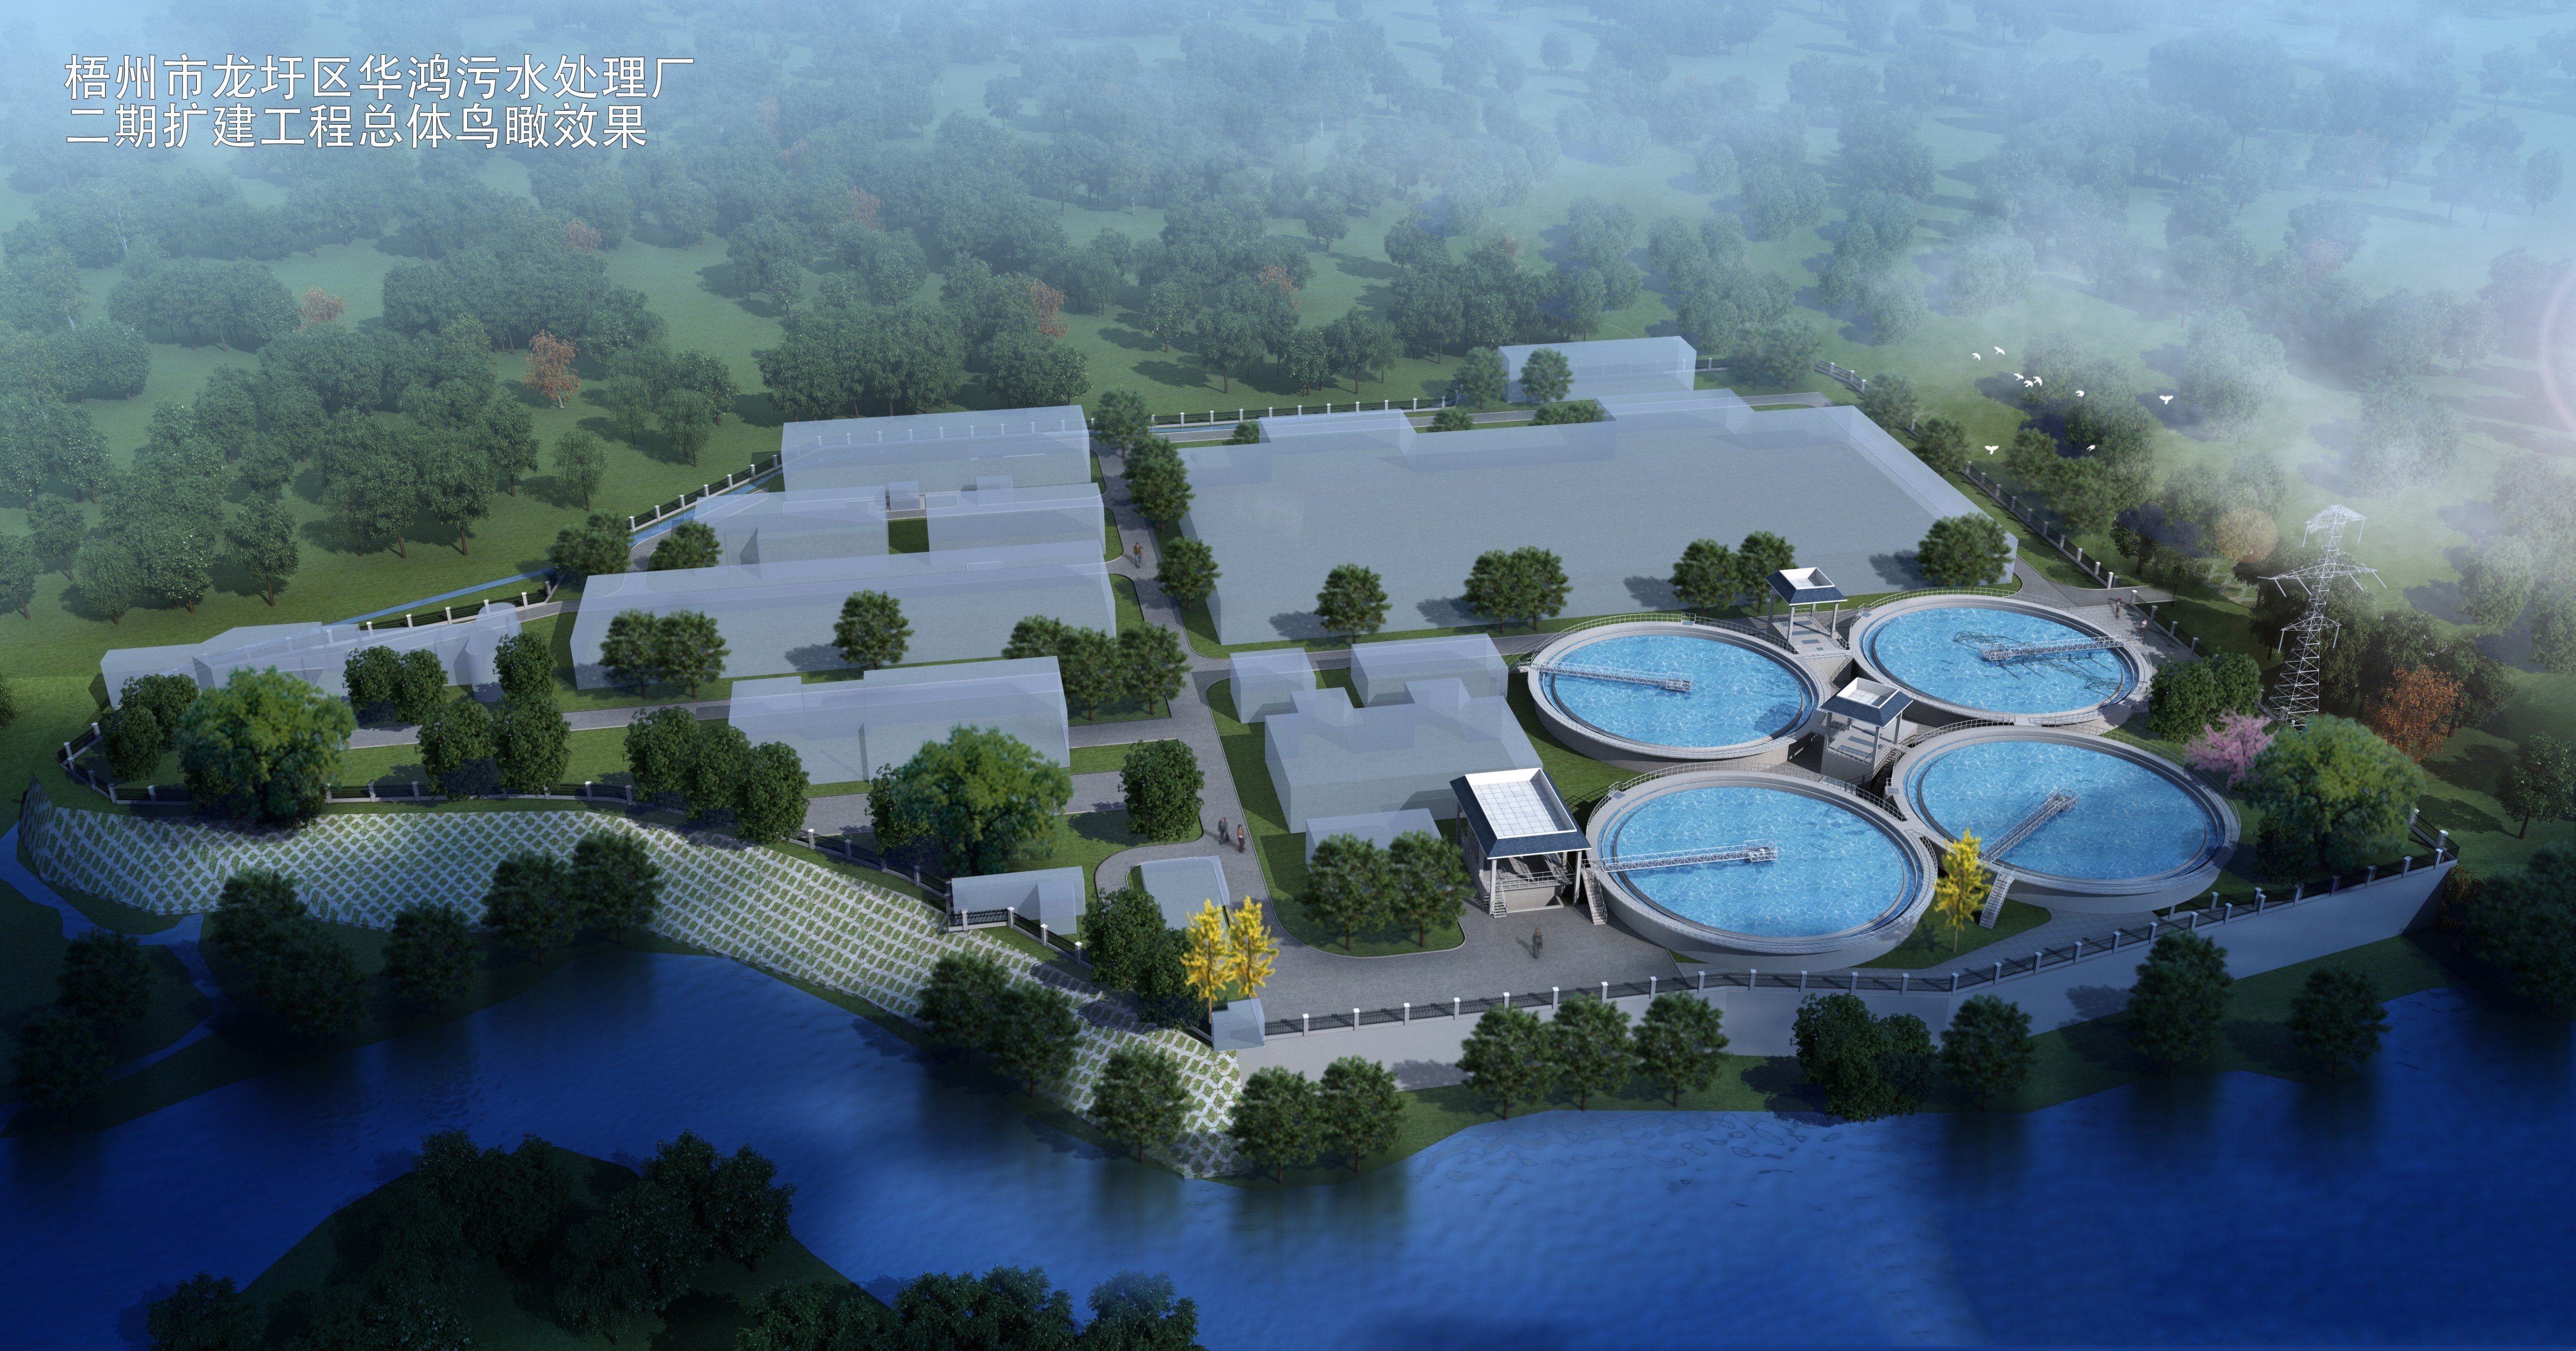 梧州市龙圩区华鸿污水处理厂二期扩建工程